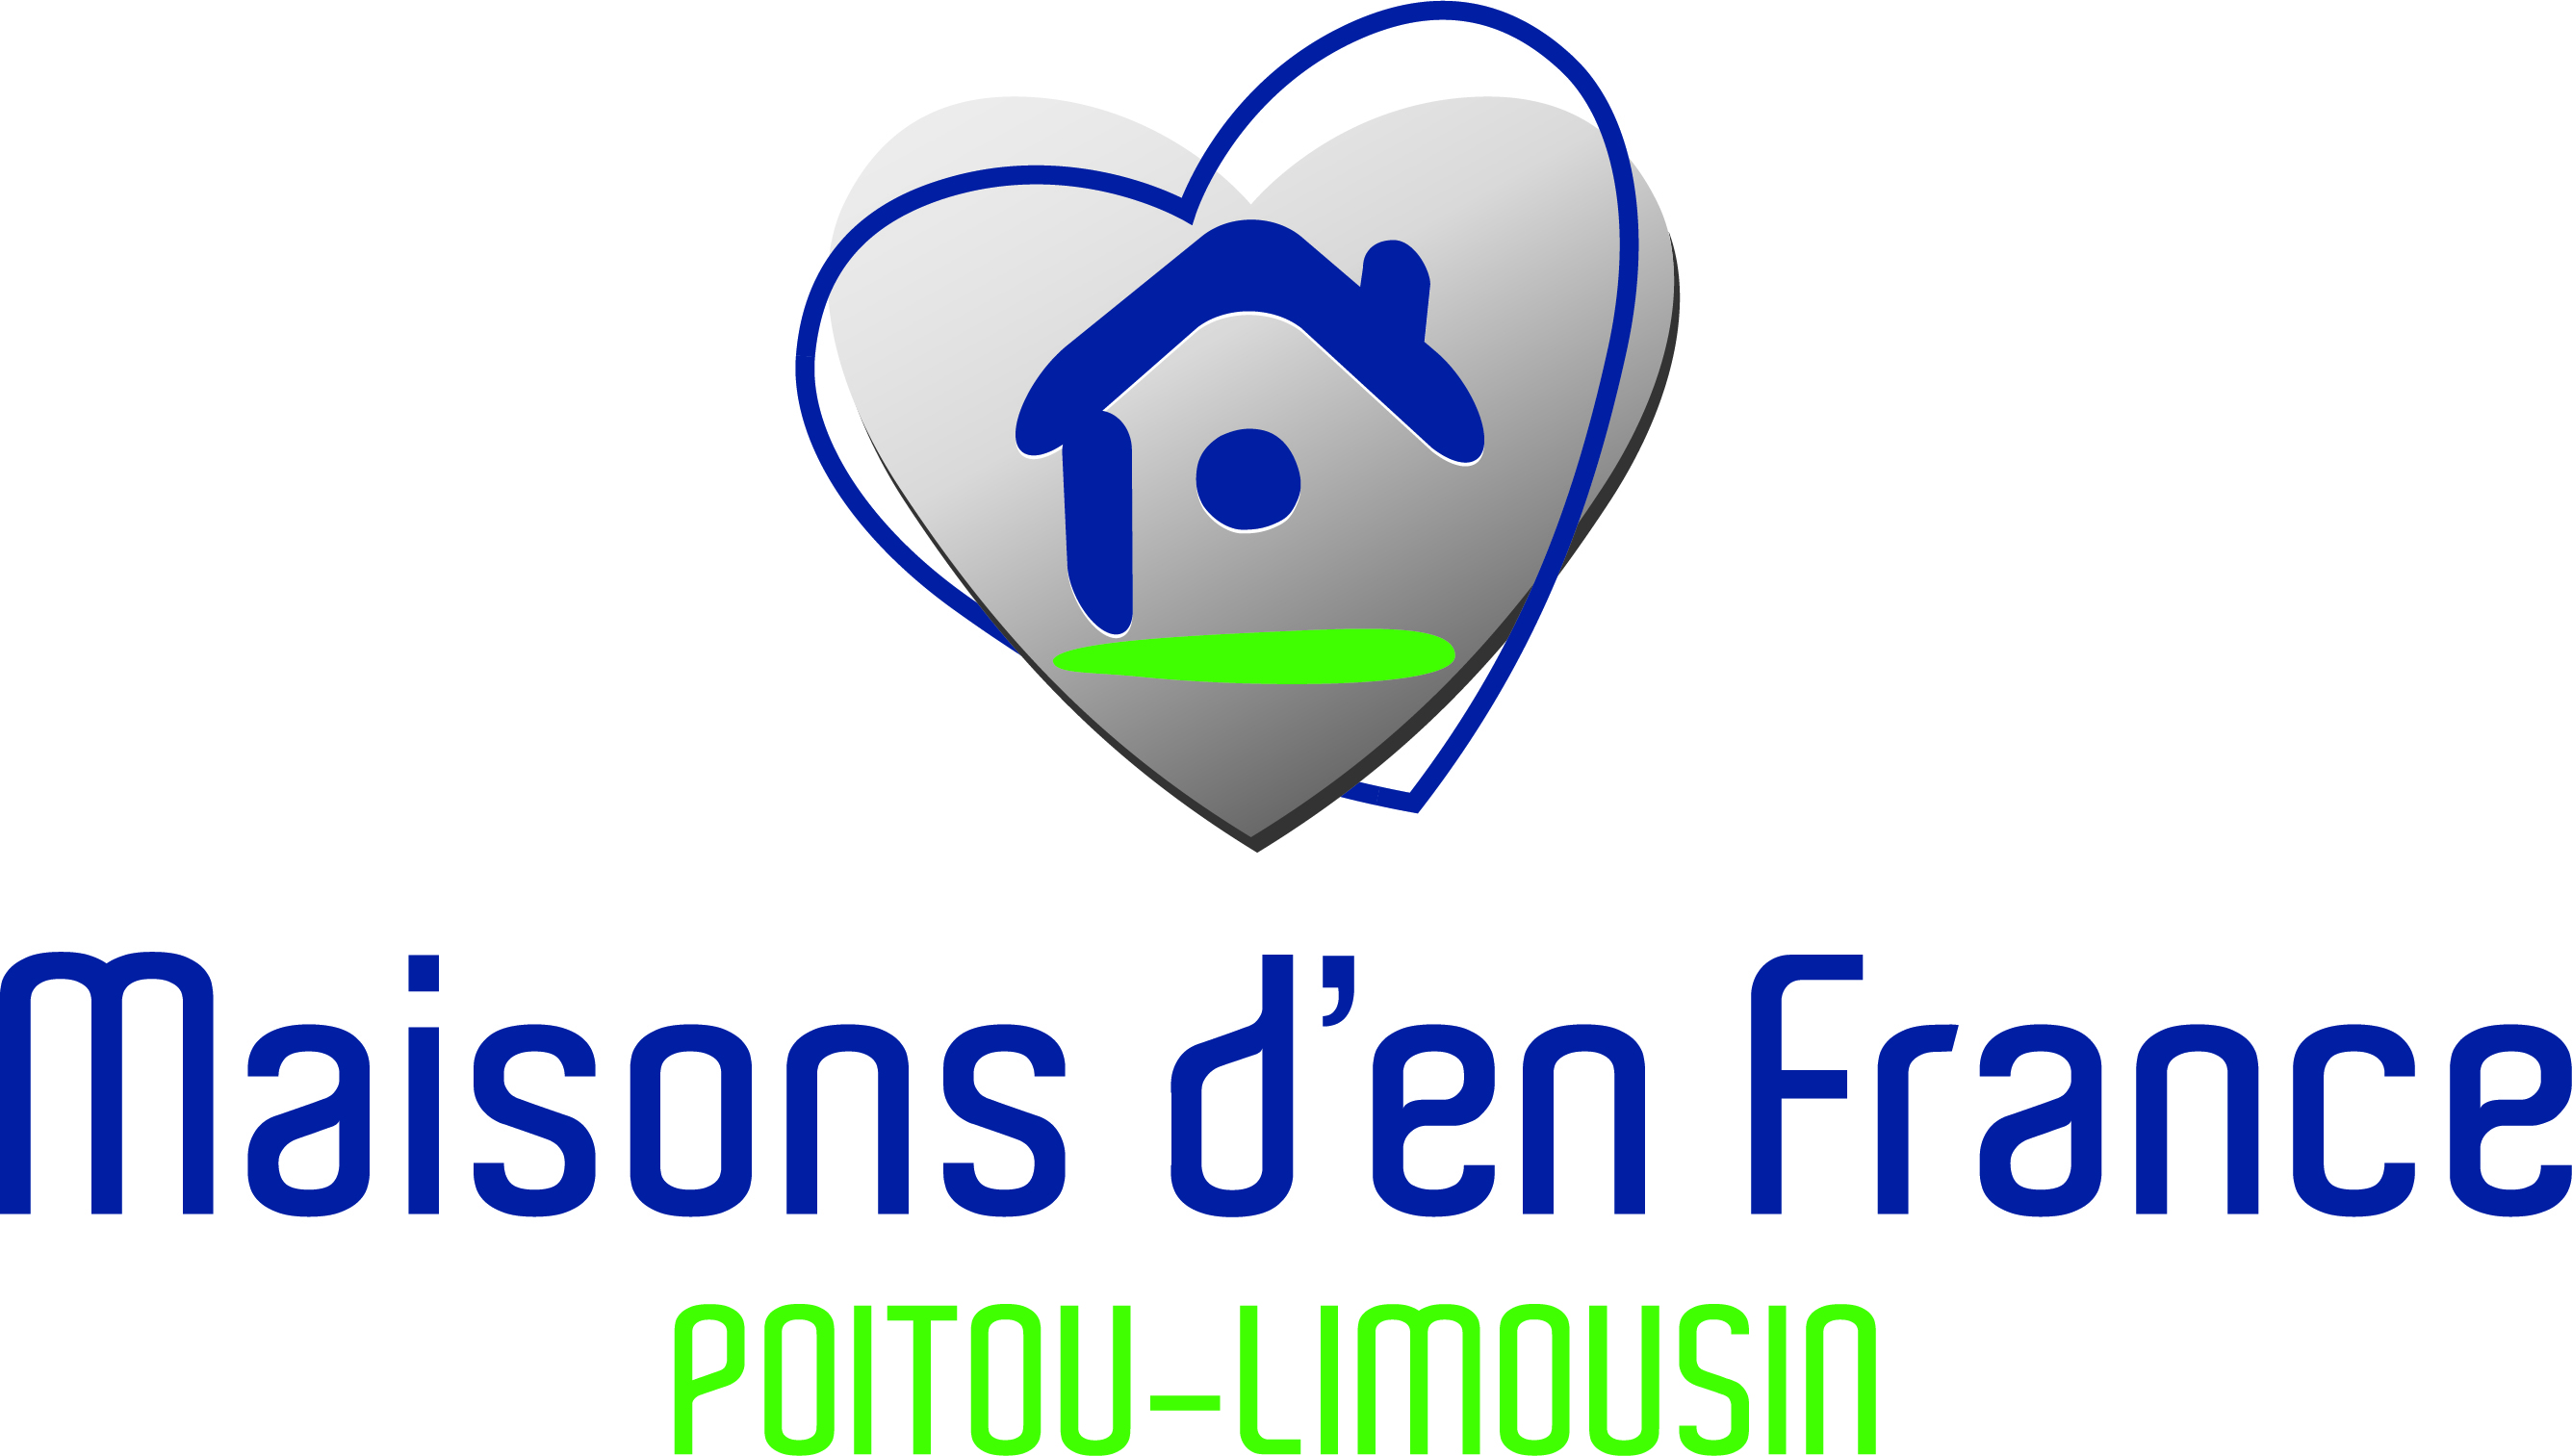 MDF Poitou-Limousin logo